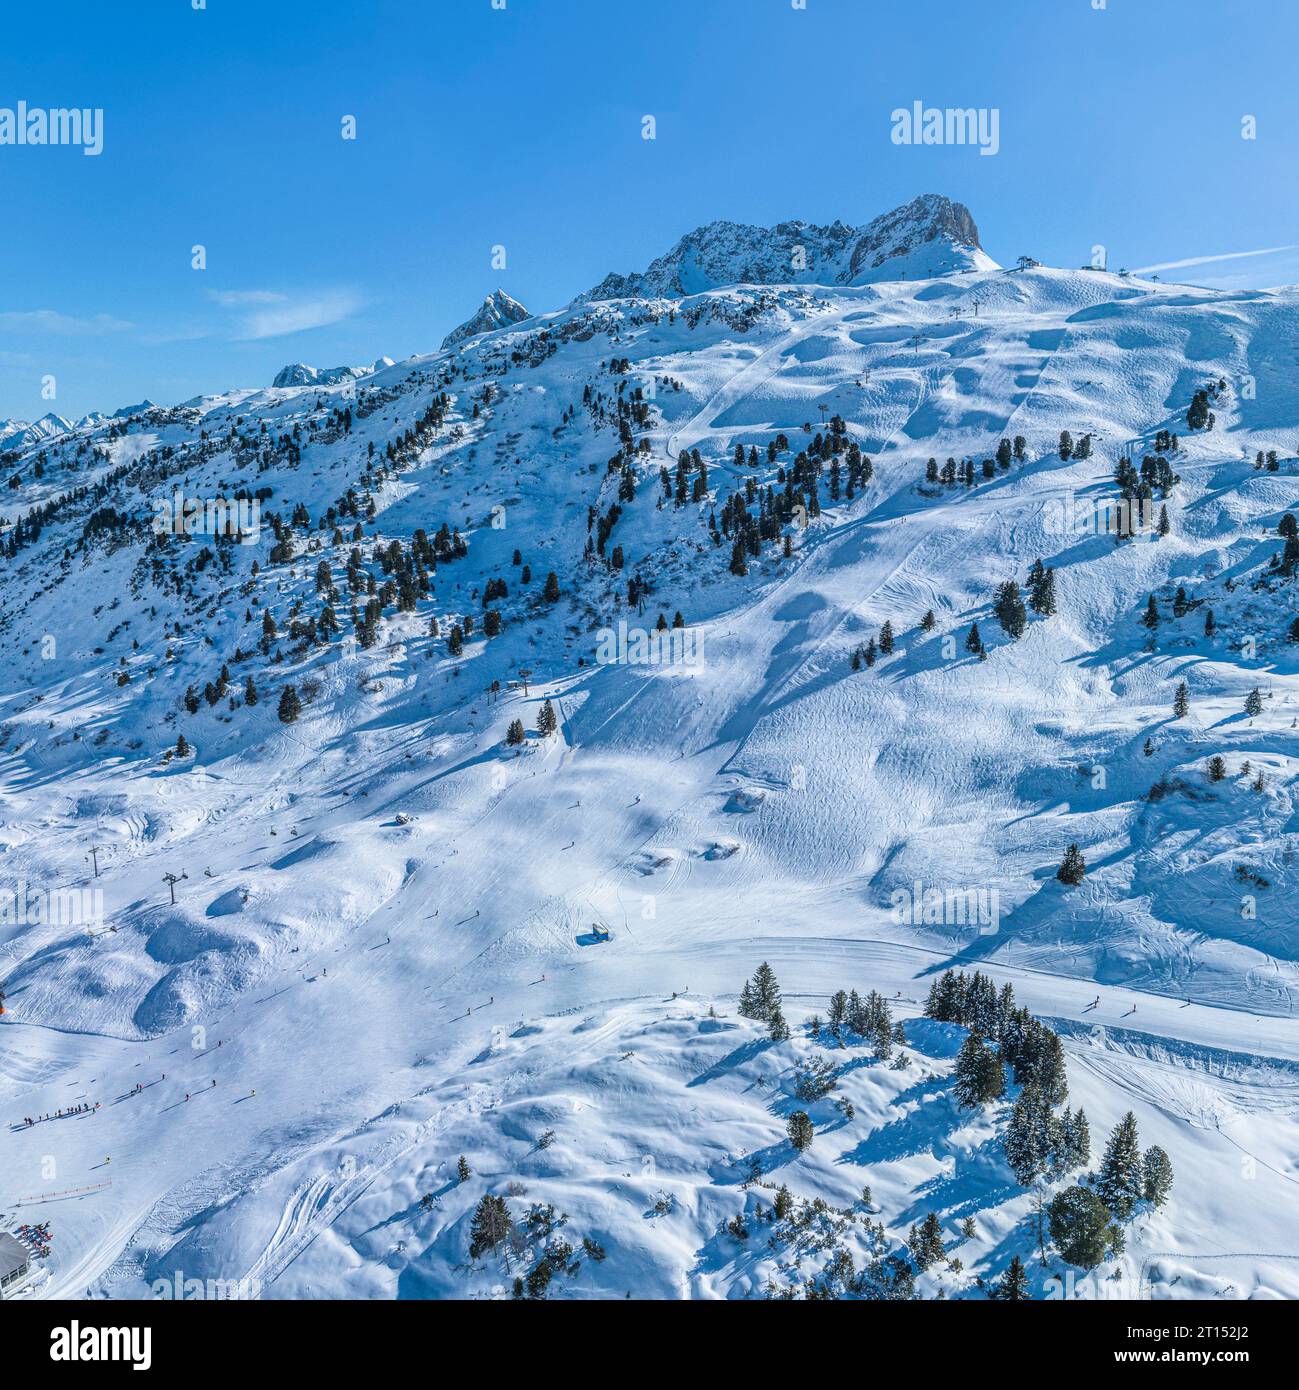 La fantastica stazione sciistica di alta montagna di Warth-Schroecken, sull'Arlberg, in Austria, dall'alto Foto Stock